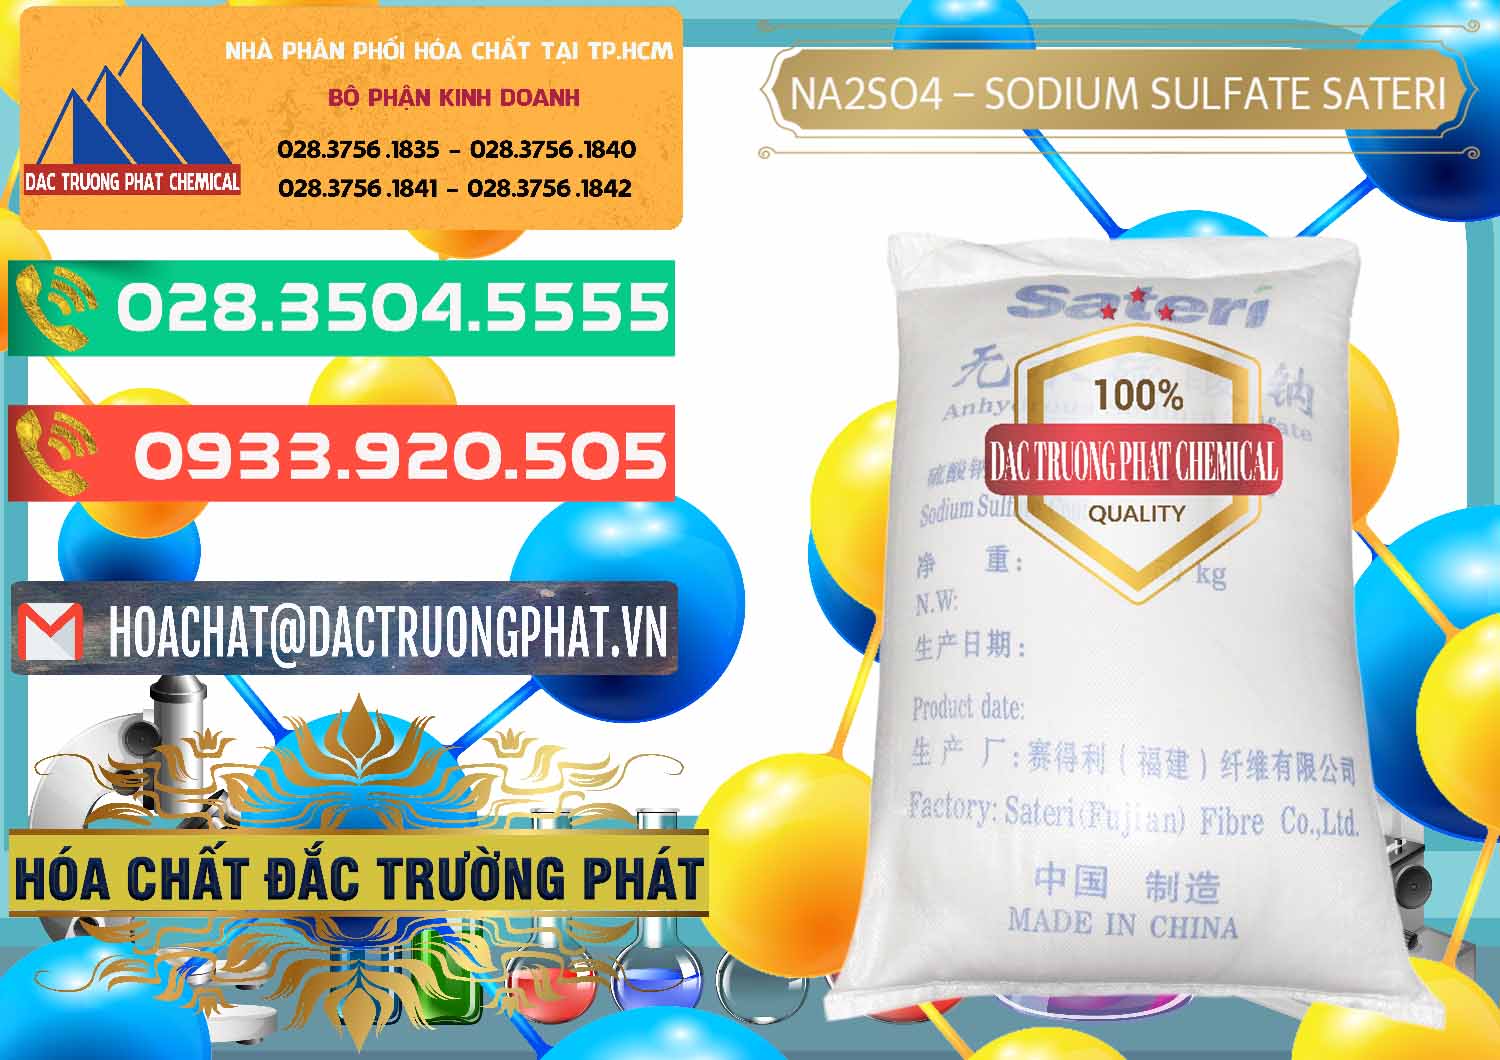 Cty chuyên bán và phân phối Sodium Sulphate - Muối Sunfat Na2SO4 Sateri Trung Quốc China - 0100 - Cty cung cấp _ nhập khẩu hóa chất tại TP.HCM - congtyhoachat.com.vn